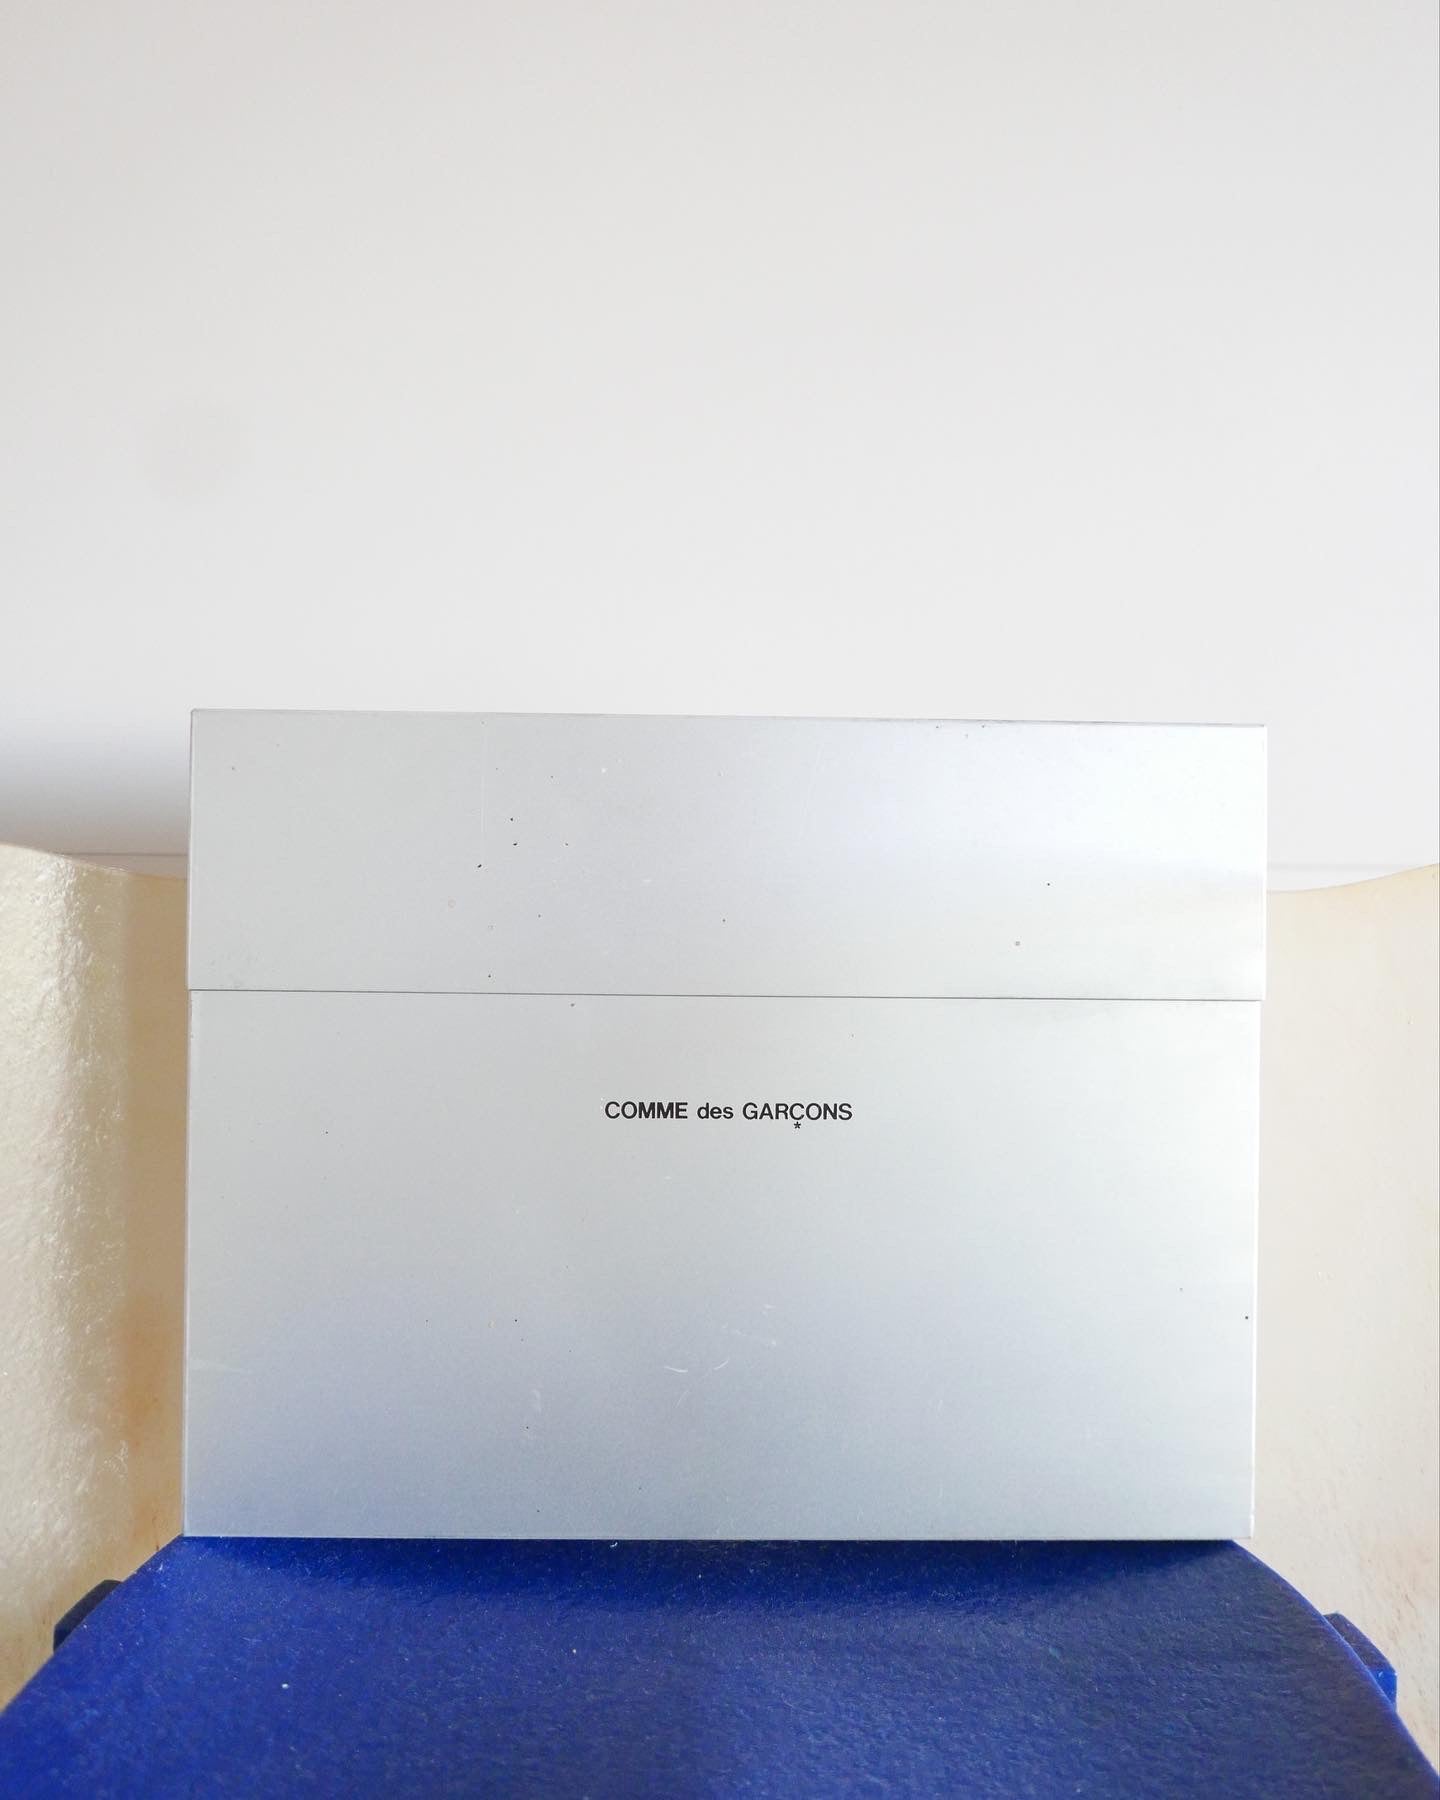 presentation box by COMME des GARÇONS